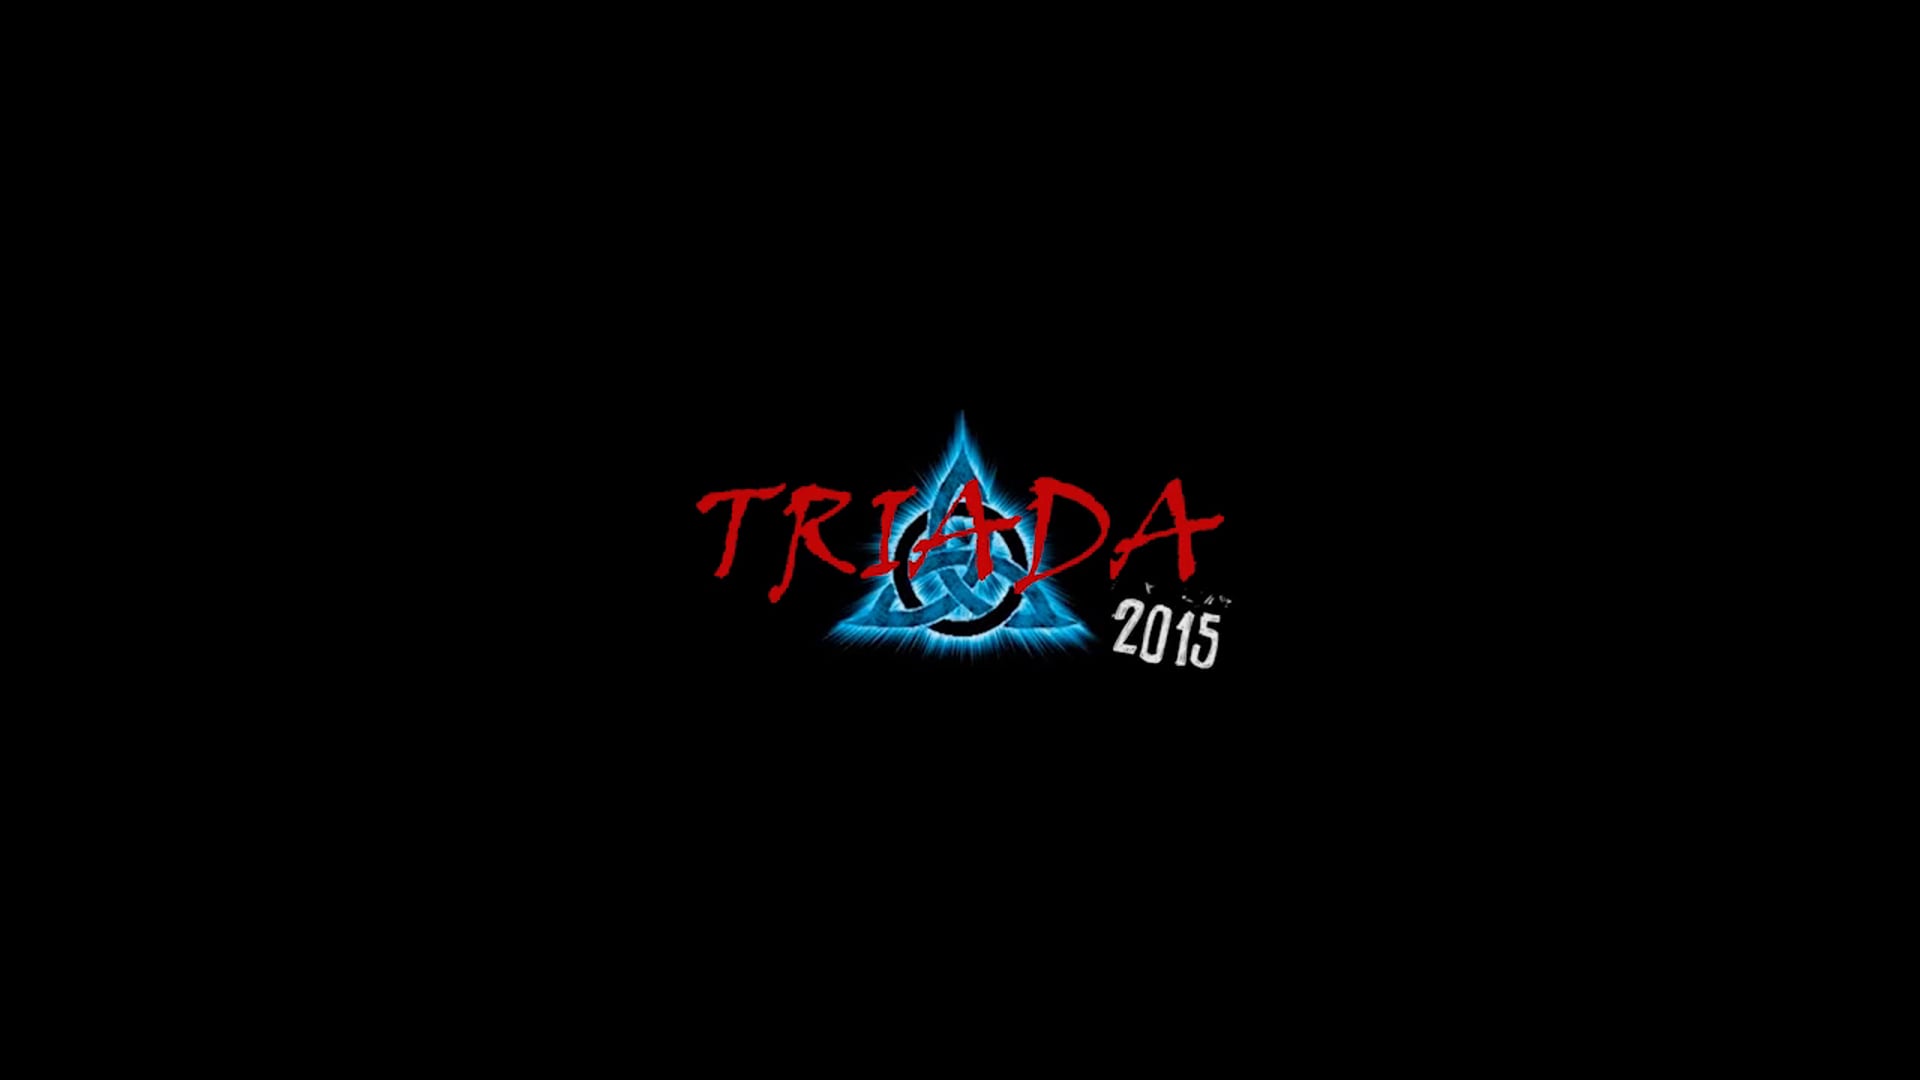 Triada 2015